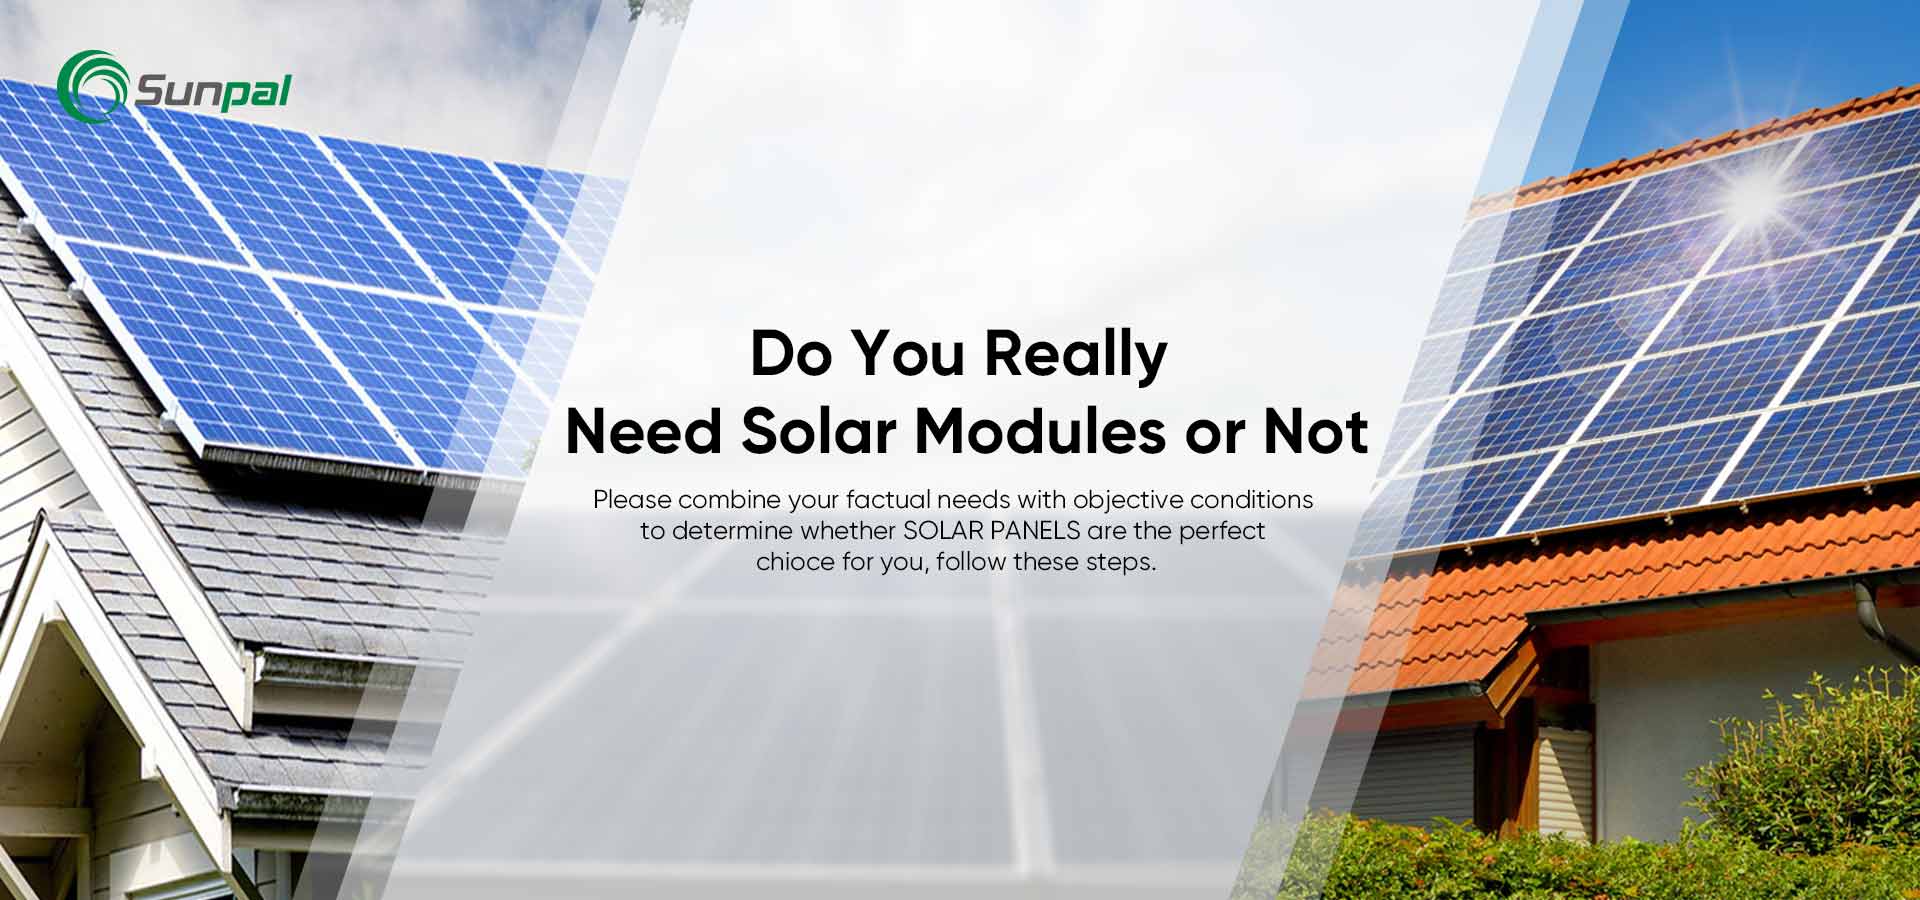 Sind Solarmodule das Richtige für Sie? 8 Anzeichen dafür, dass Sie auf Solarenergie umsteigen sollten